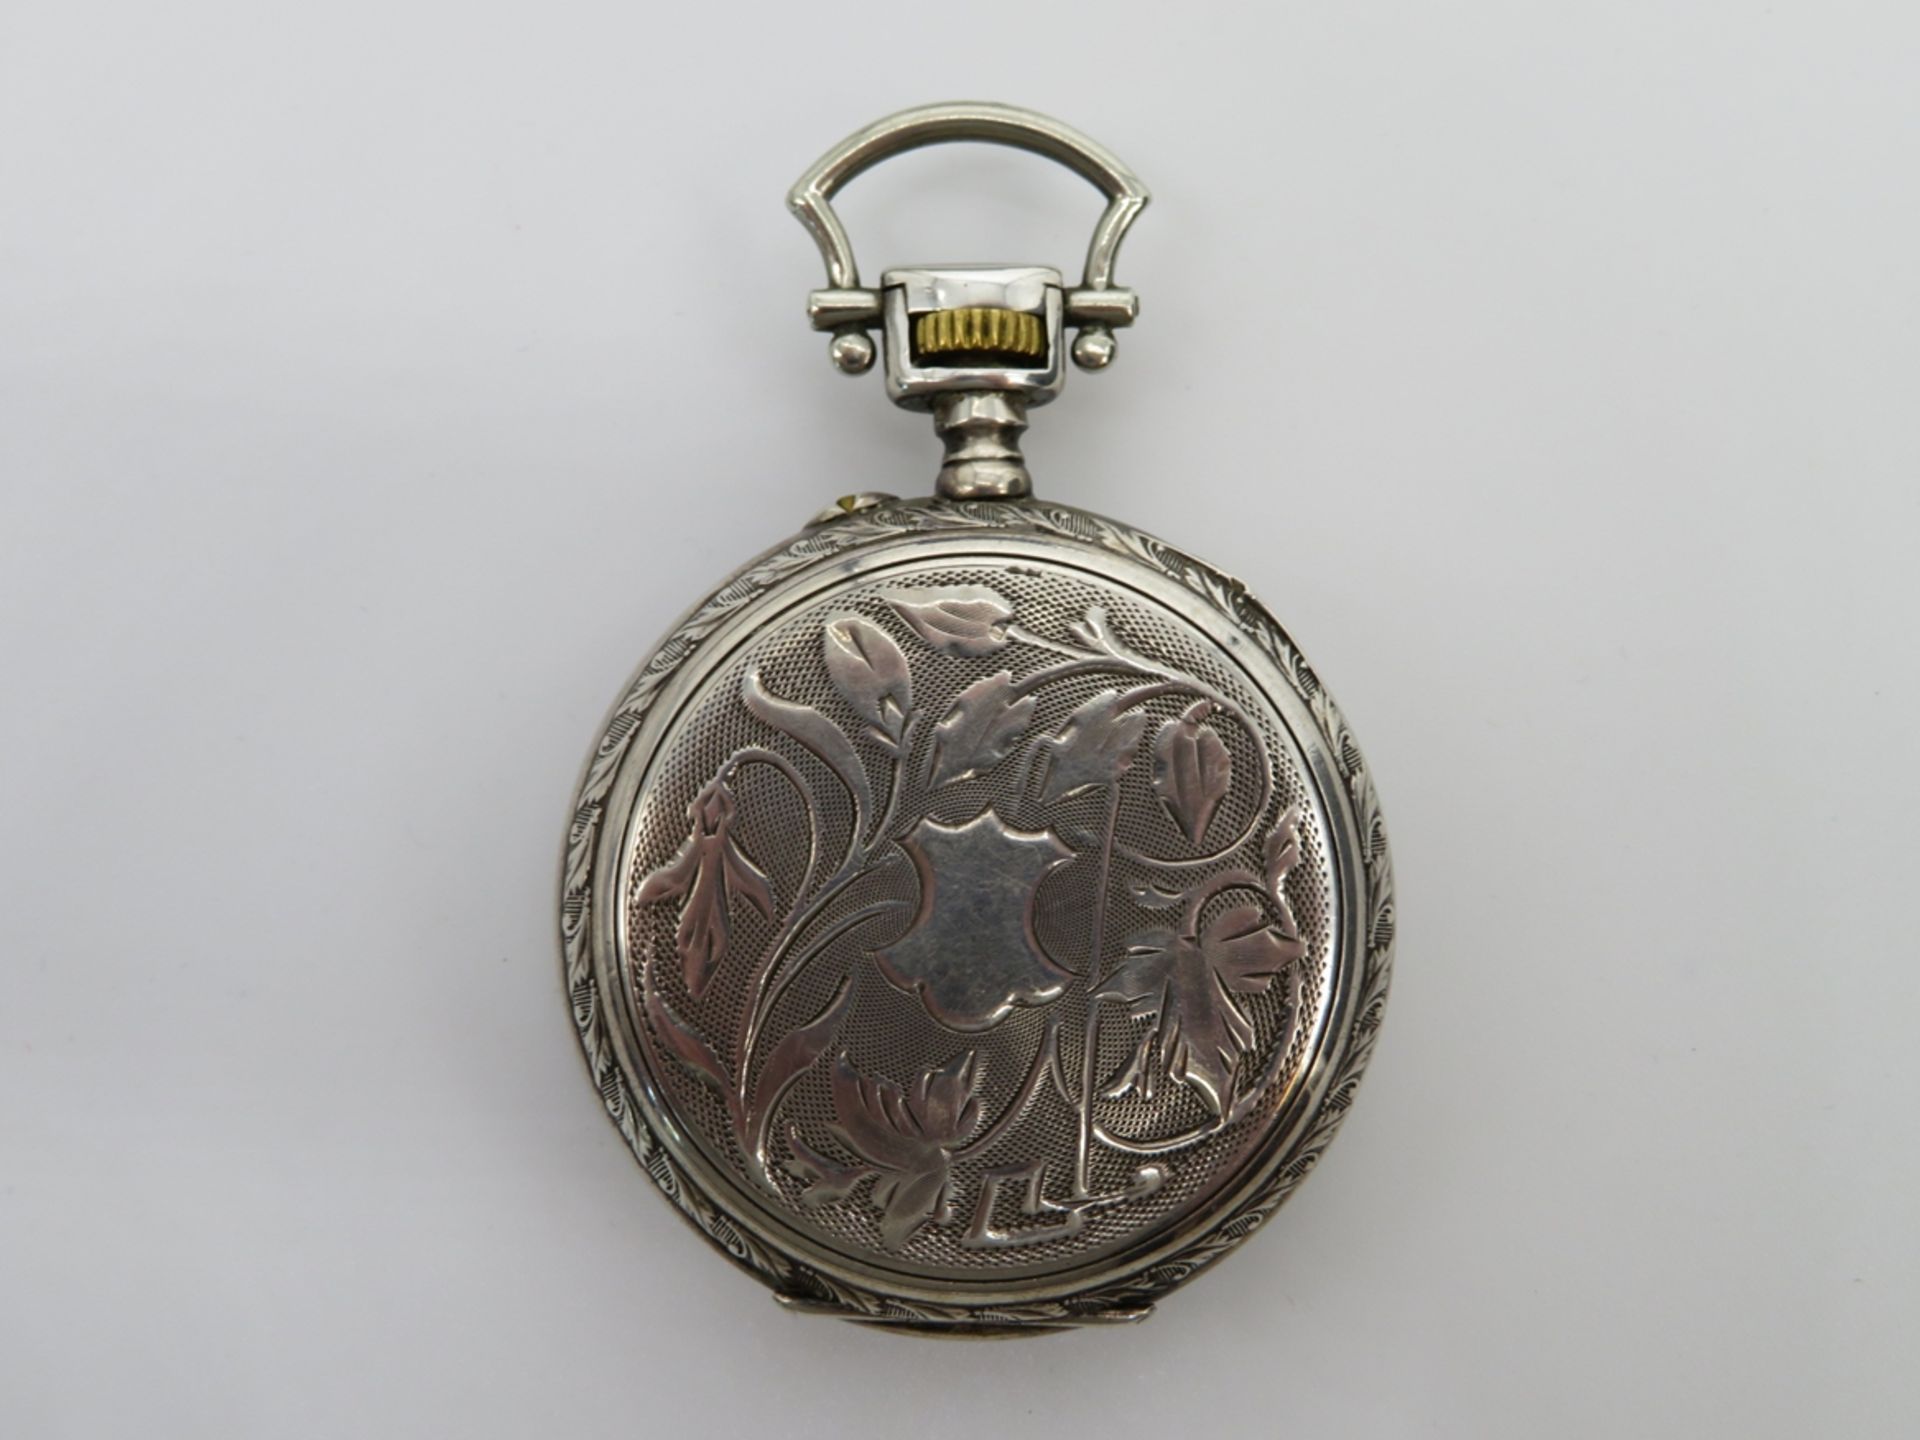 Taschenuhr, Jugendstil, um 1900, 800er Silber, gepunzt, Kronenaufzug, intakt, d 5,5 cm. - Bild 2 aus 3